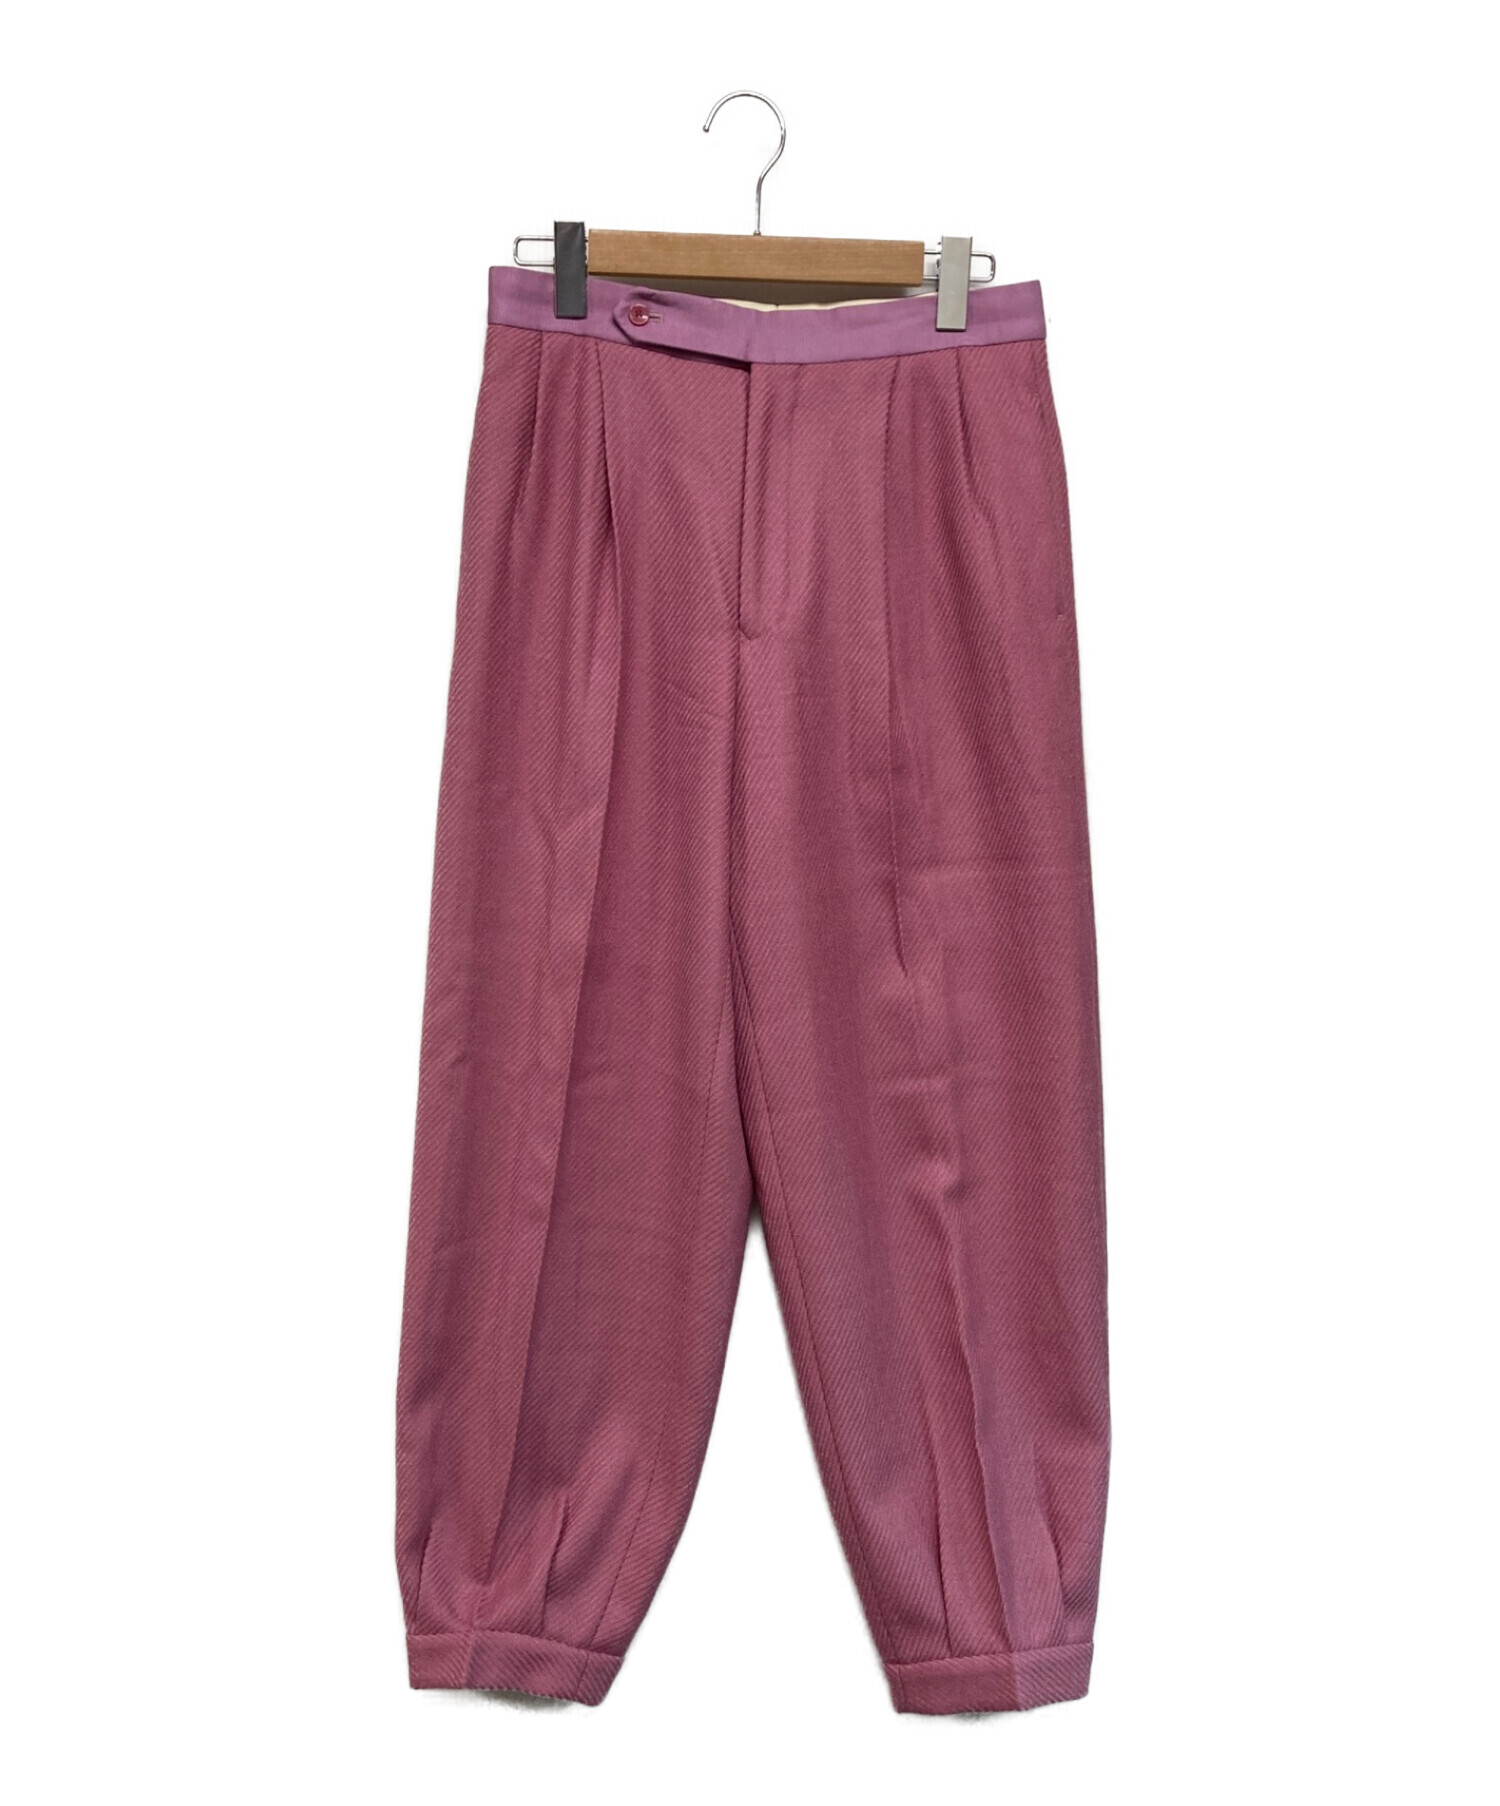 DRAWER (ドゥロワー) ウールツイル裾タックパンツ ピンク サイズ:SIZE 40